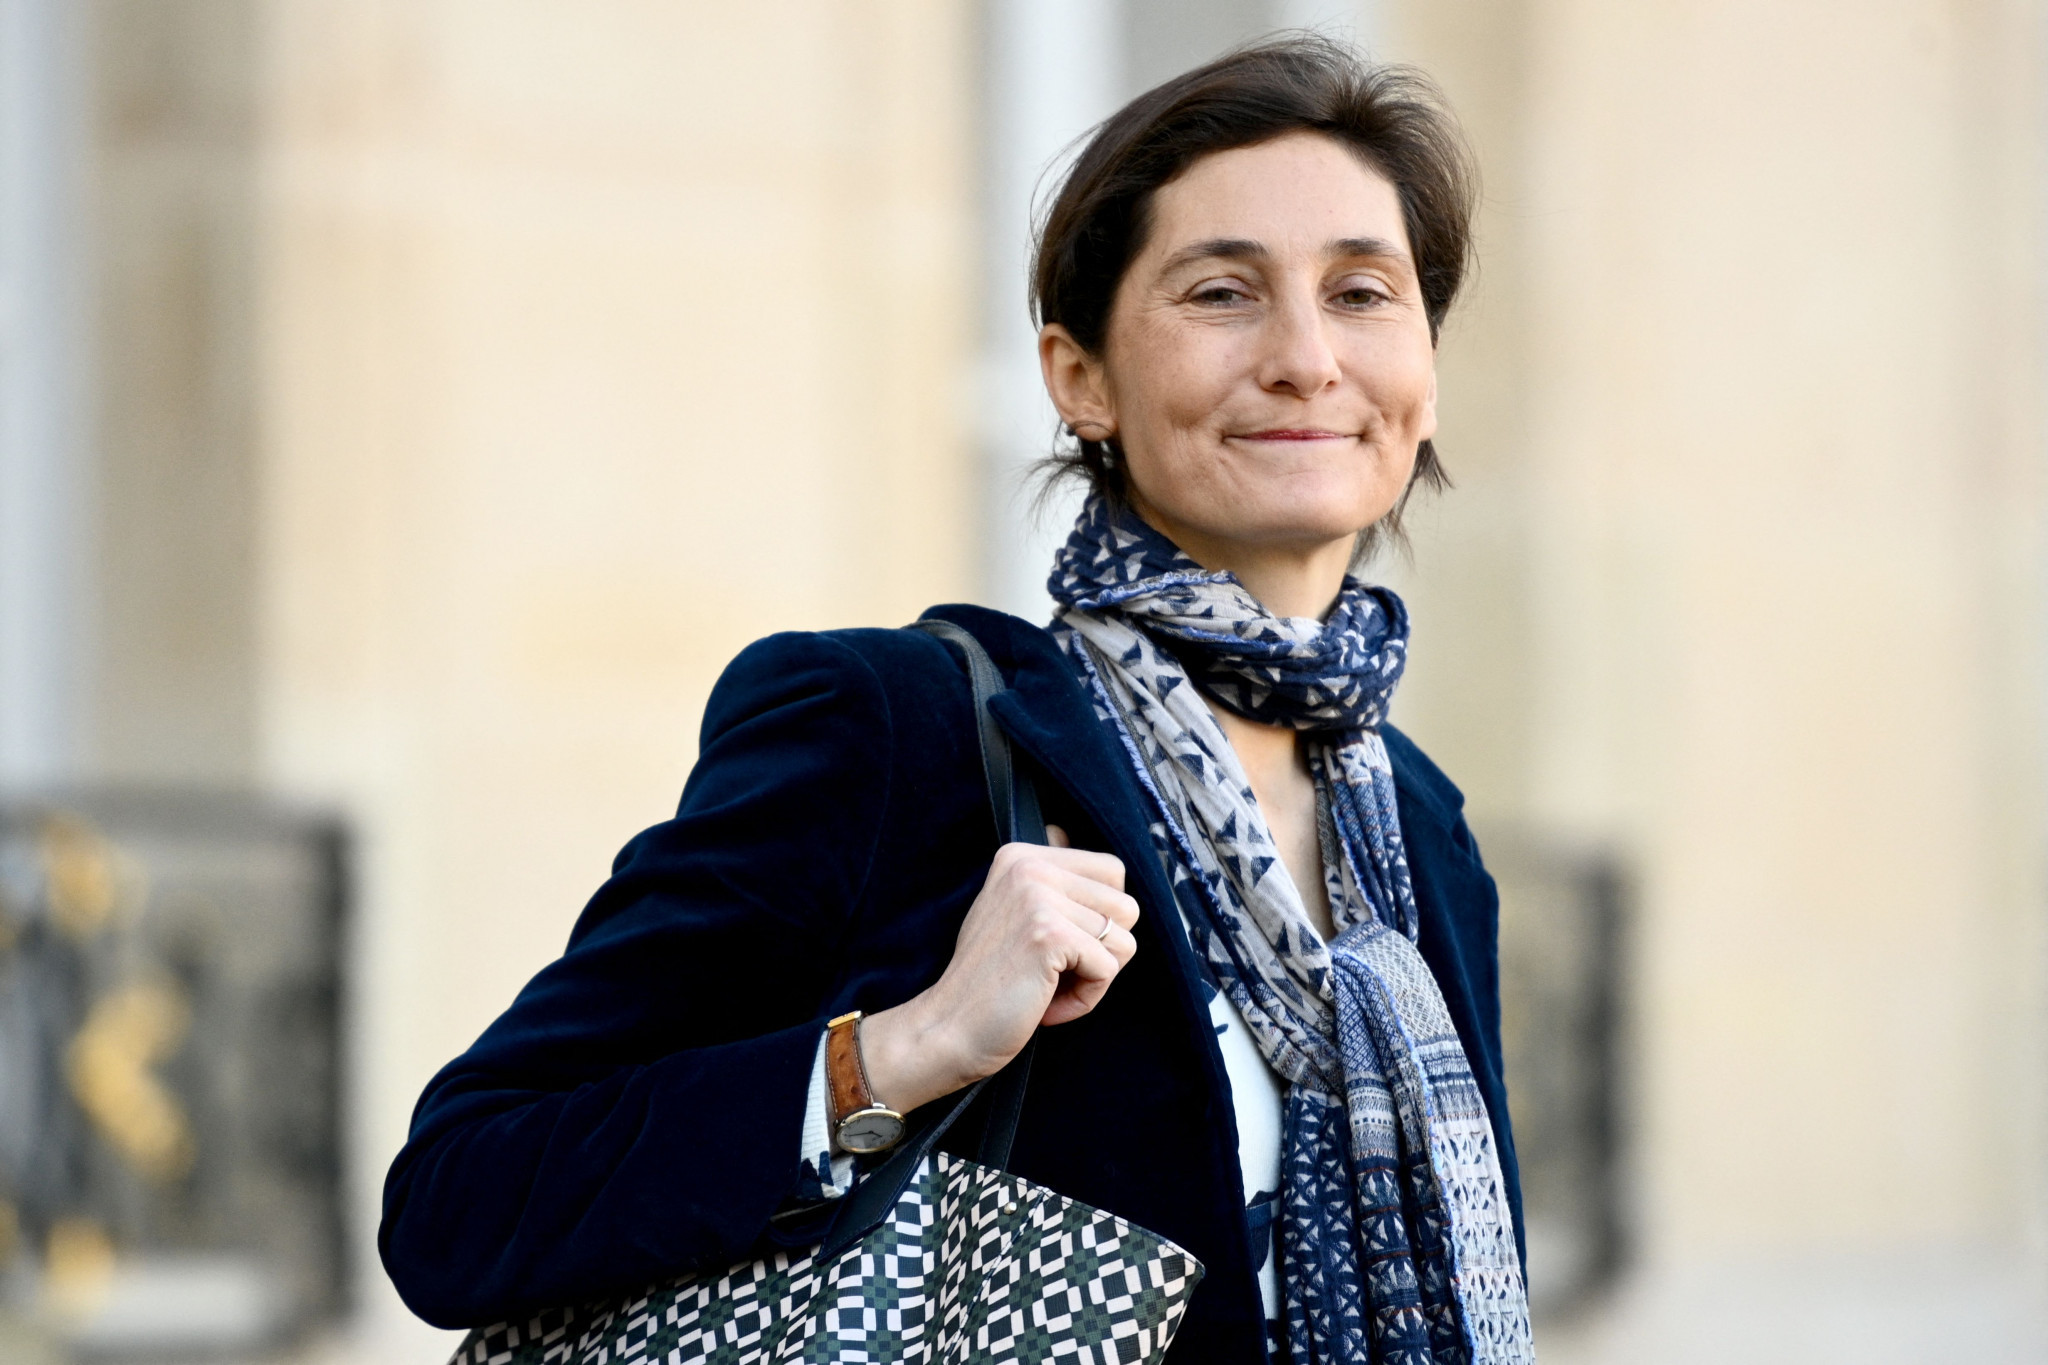 French Sports Minister Amélie Oudéa-Castéra said Bernard Laporte's resignation was 